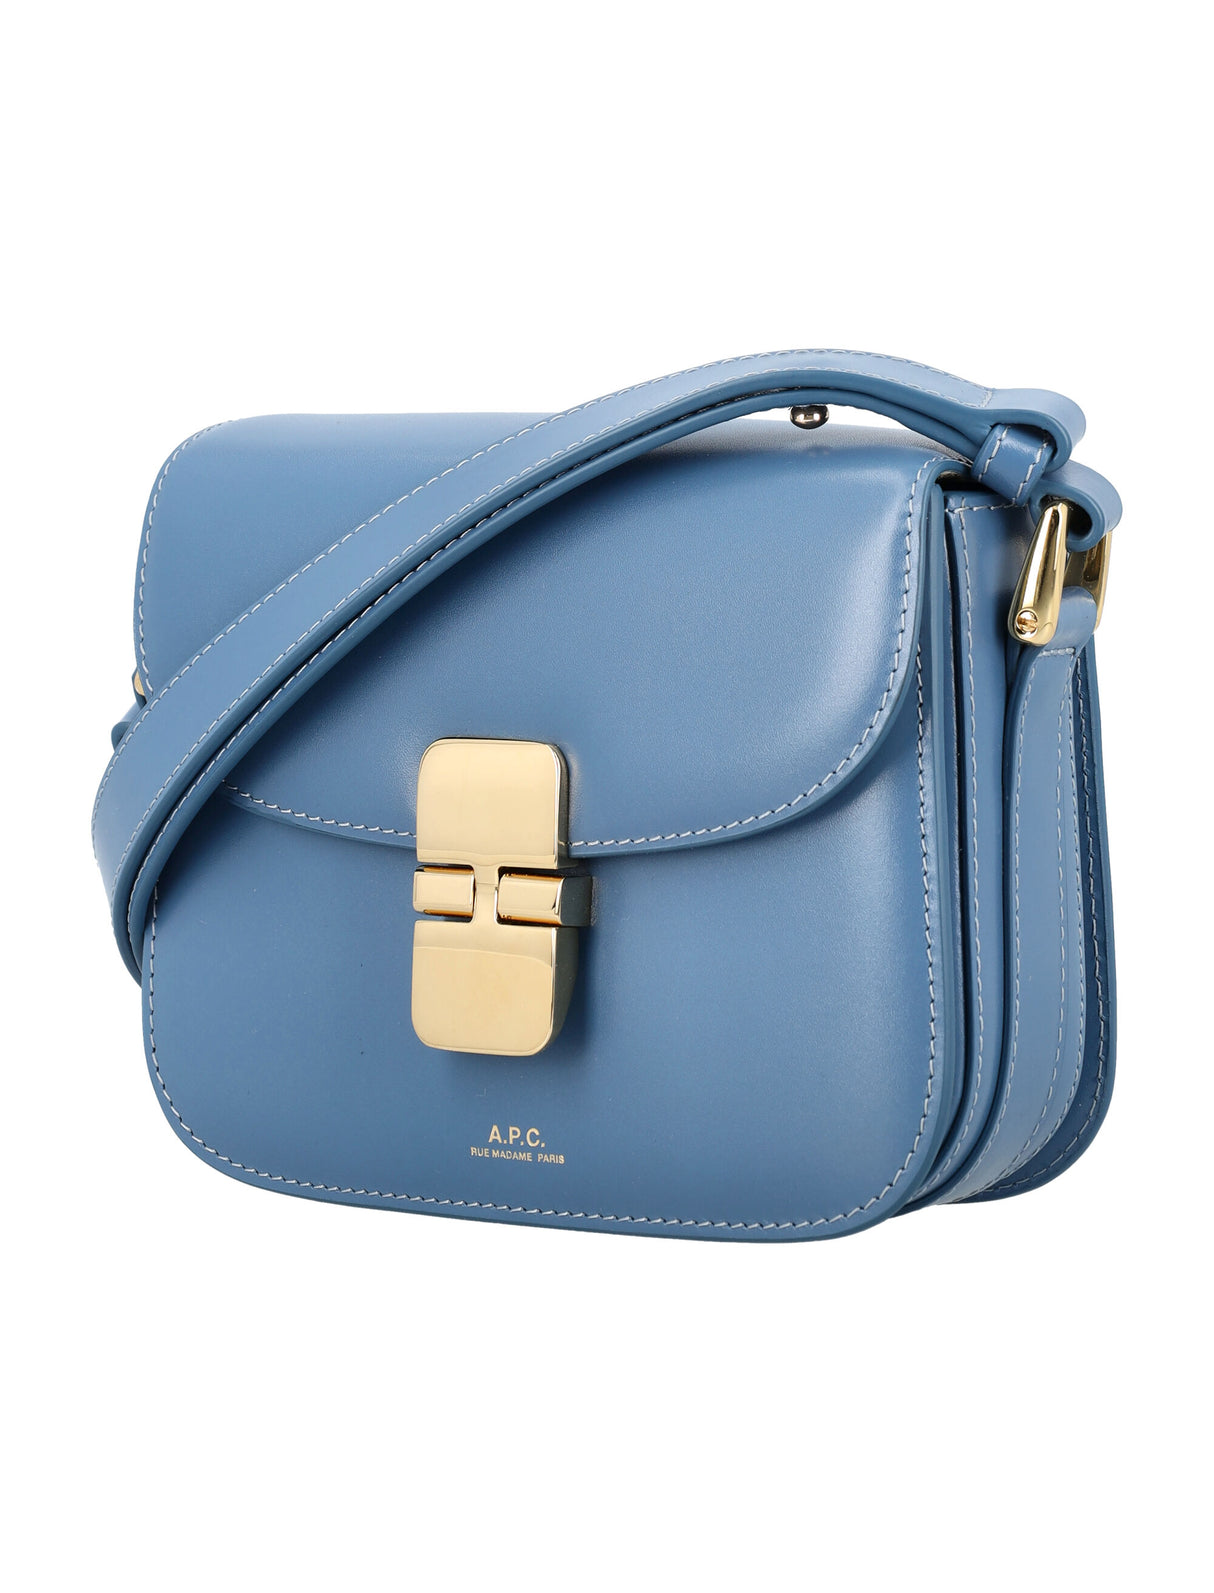 A.P.C. Grace Mini Blue Leather Shoulder Bag with Goldtone Accents, 14.5x17.5x4 cm